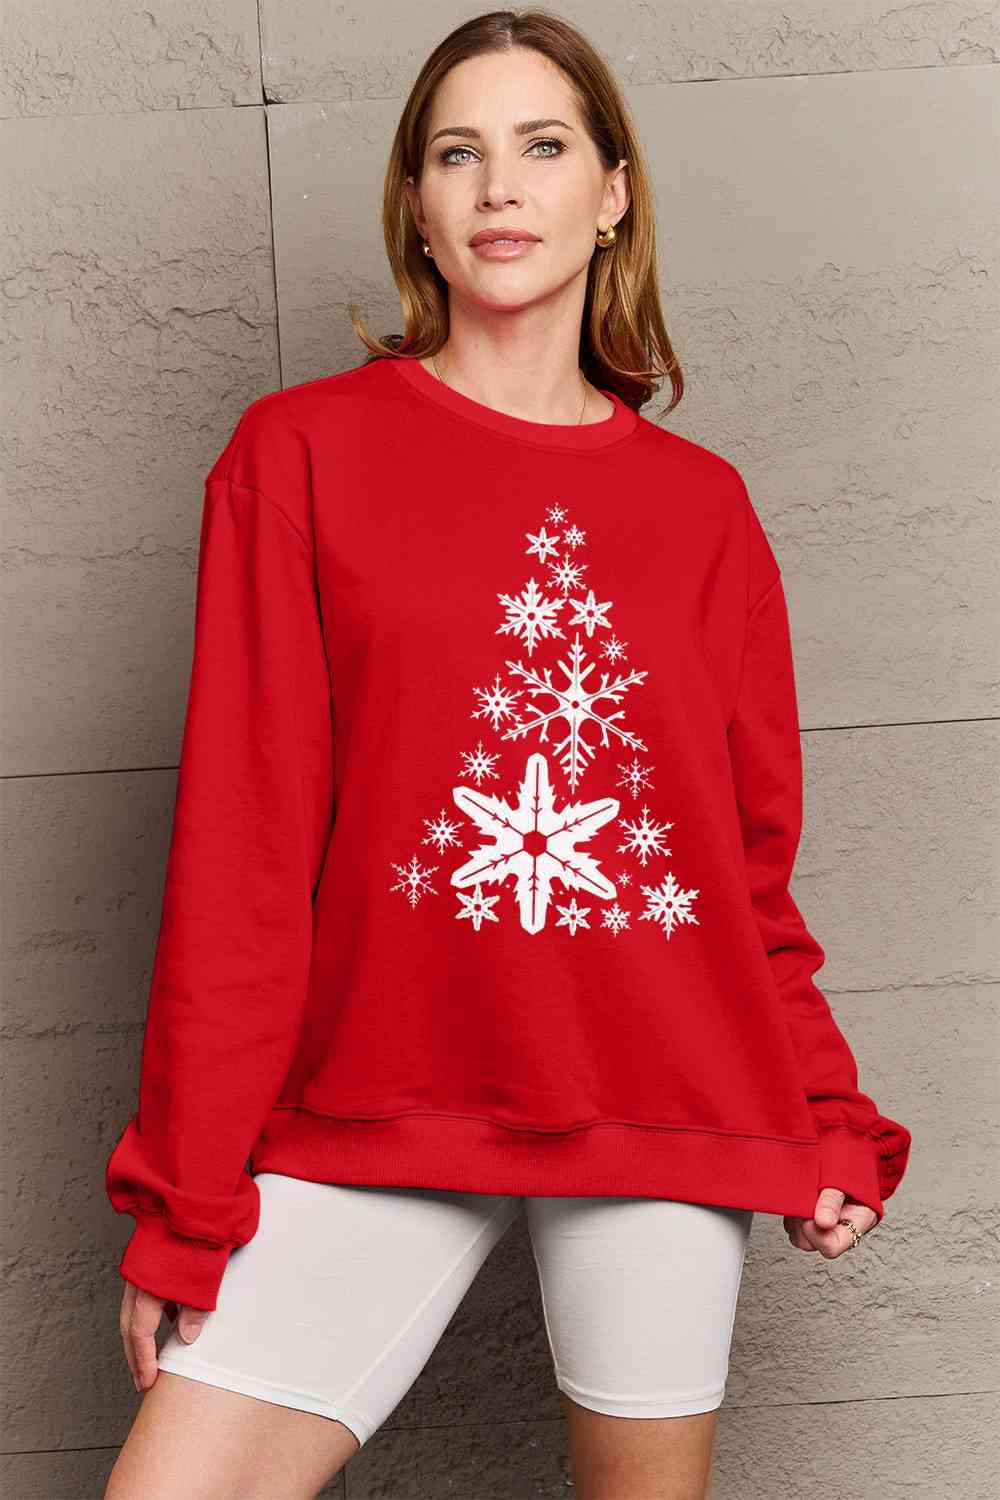 Simply Love フルサイズ スノーフレーク クリスマス ツリー グラフィック スウェットシャツ